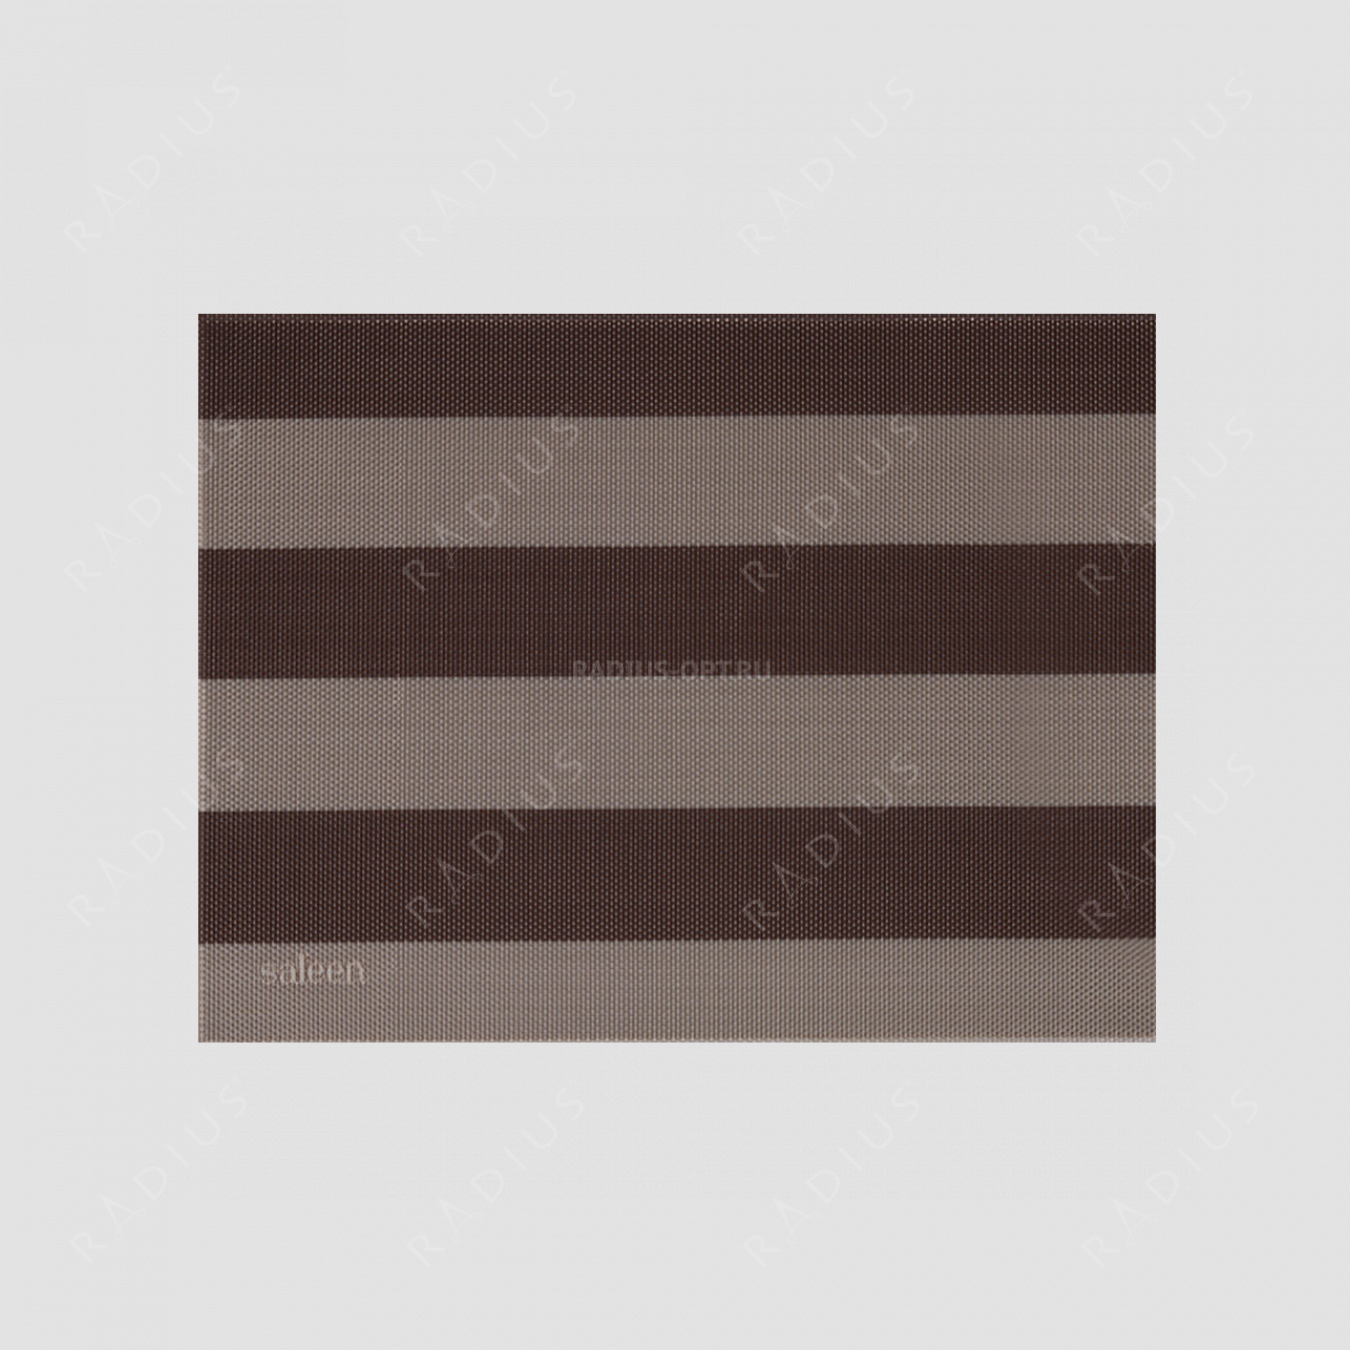 Салфетка подстановочная, винил, 32х42 см, цвет бежевый / коричневый, Stripes, серия Saleen, Westmark, Германия